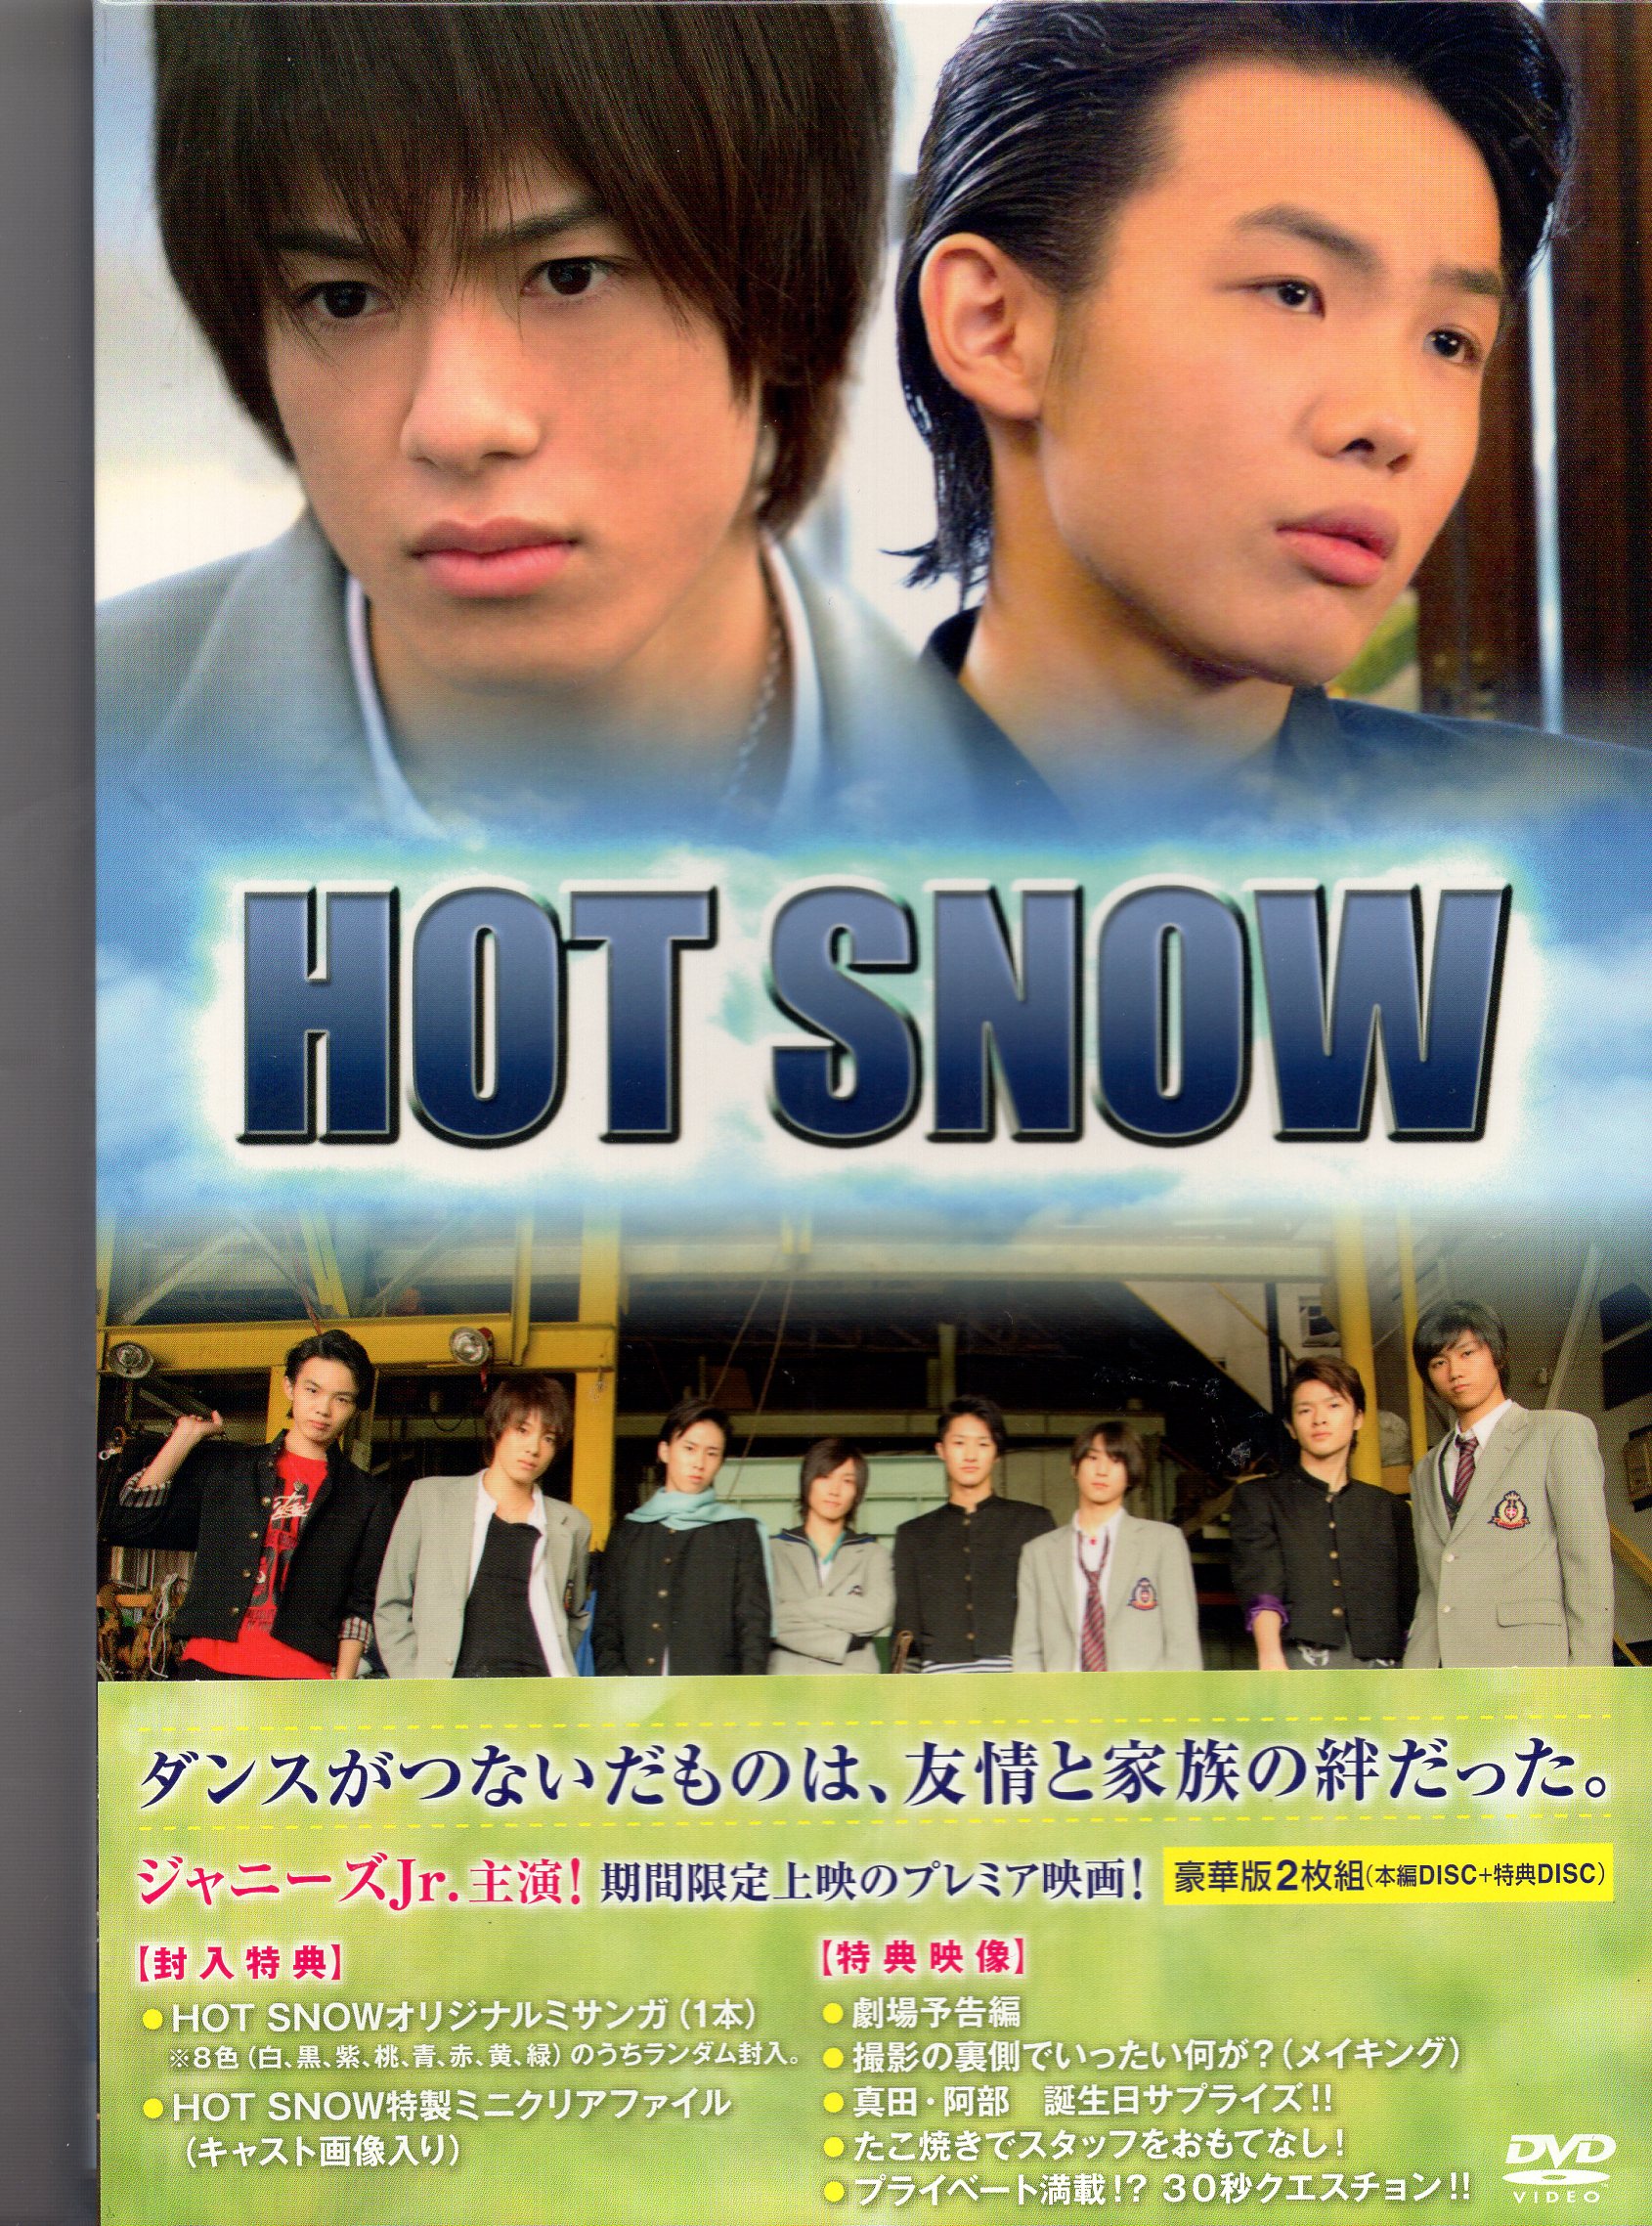 HOT SNOW 映画 DVD